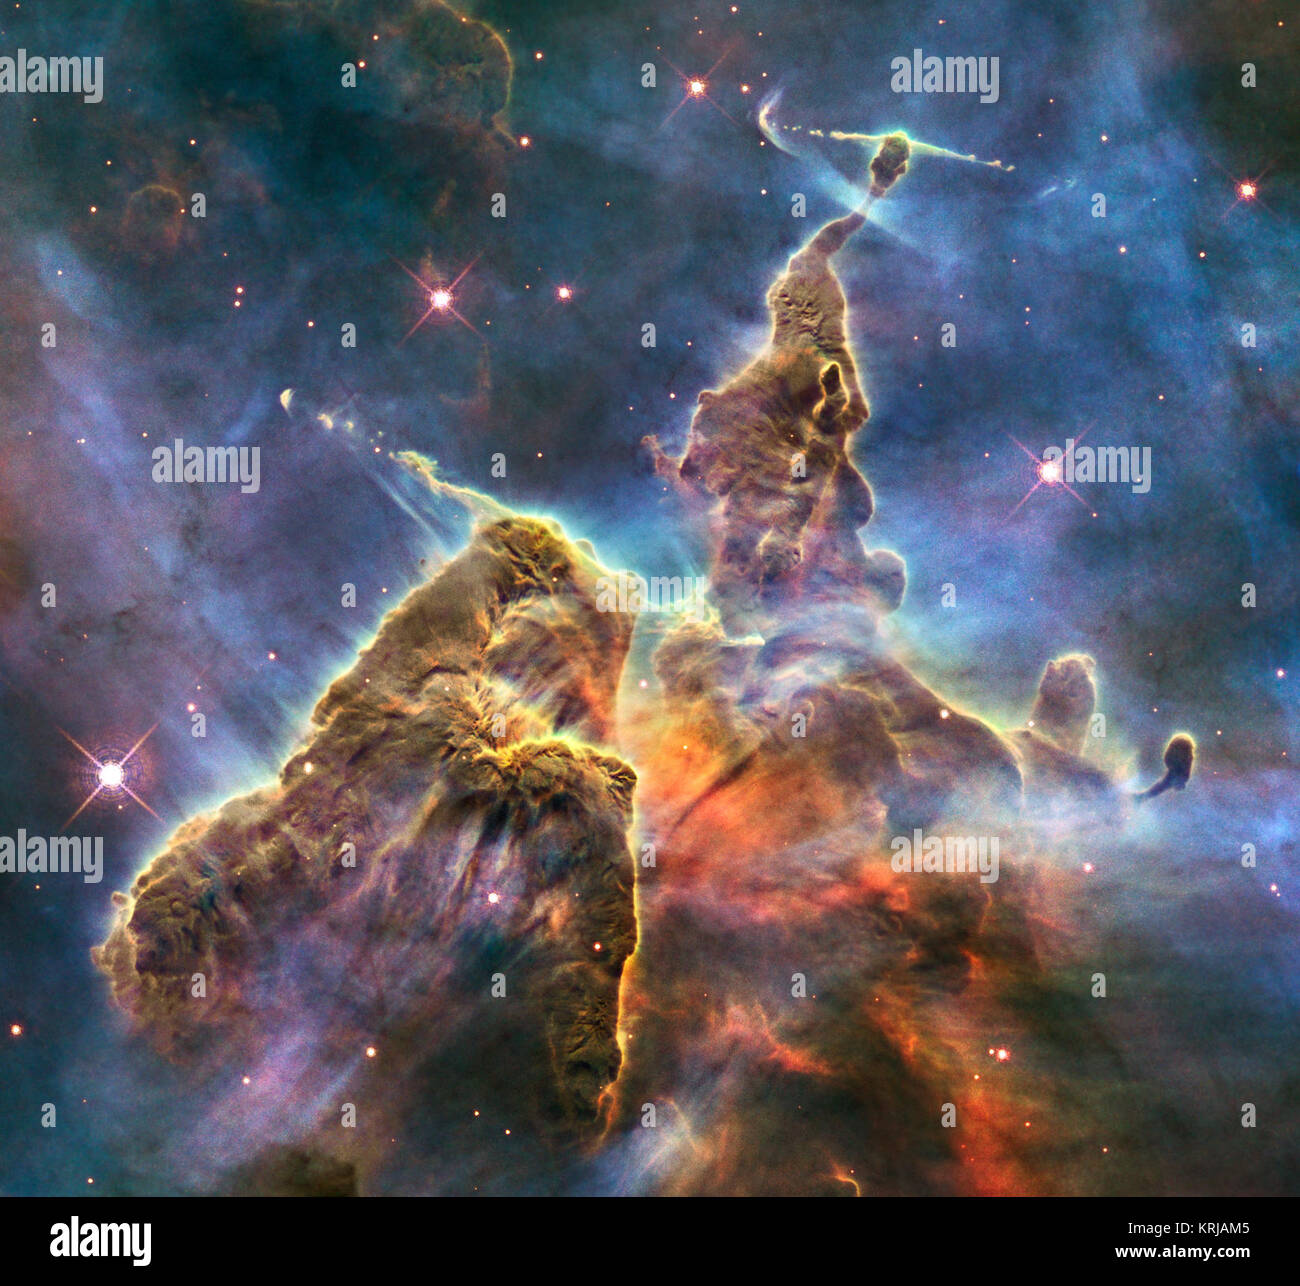 HH901 und HH 902 der Carina nebula (Durch das Hubble Space Telescope erfasst) Stockfoto